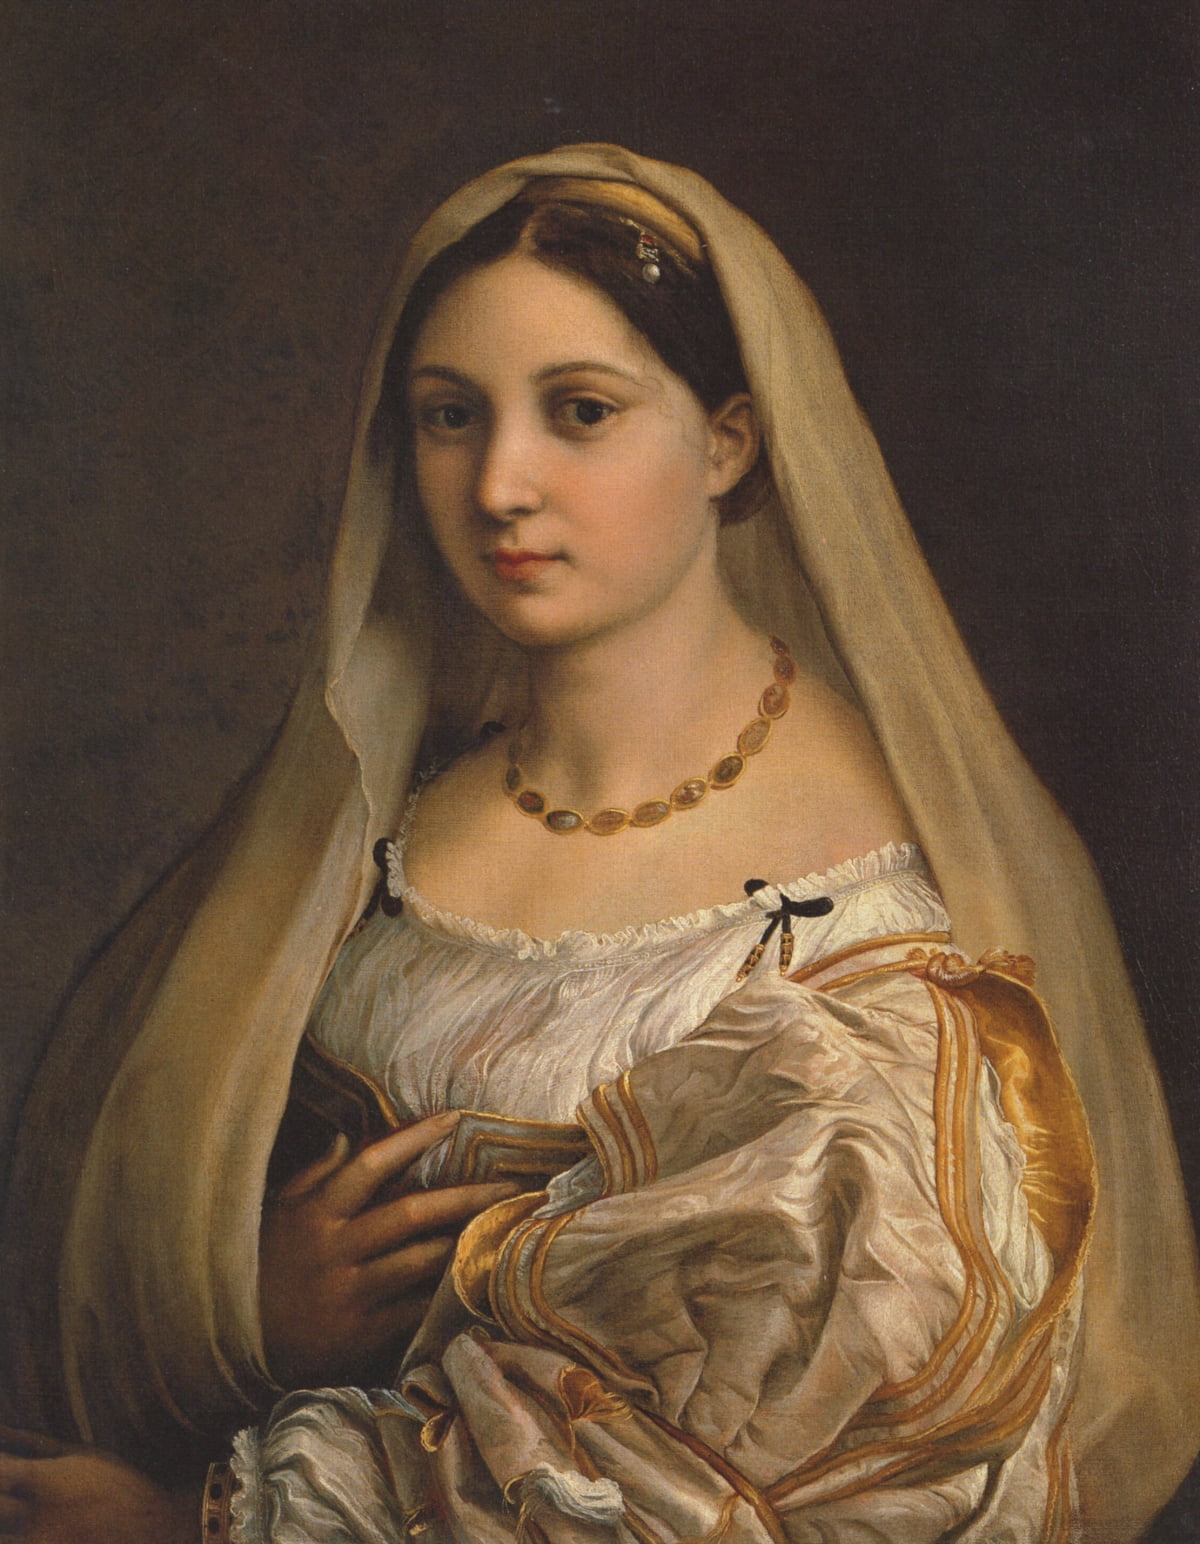 라파엘로의 베일 쓴 여인(1514~1516년경). 라파엘로의 가장 아름다운 여인 초상이다. 초상화 속 인물은 정면을 바라보고 있다. 지금이야 특별할 것 하나 없는 구도지만, 다빈치가 '모나리자'를 그리기 전까지 초상화라고 하면 고대 동전처럼 모델의 옆 얼굴을 묘사하는 게 일반적이었다. 다빈치와 라파엘로 이후로 서양의 초상화에서는 정면 얼굴을 그리는 방식이 보편화된다. /피렌체 팔라티나 미술관